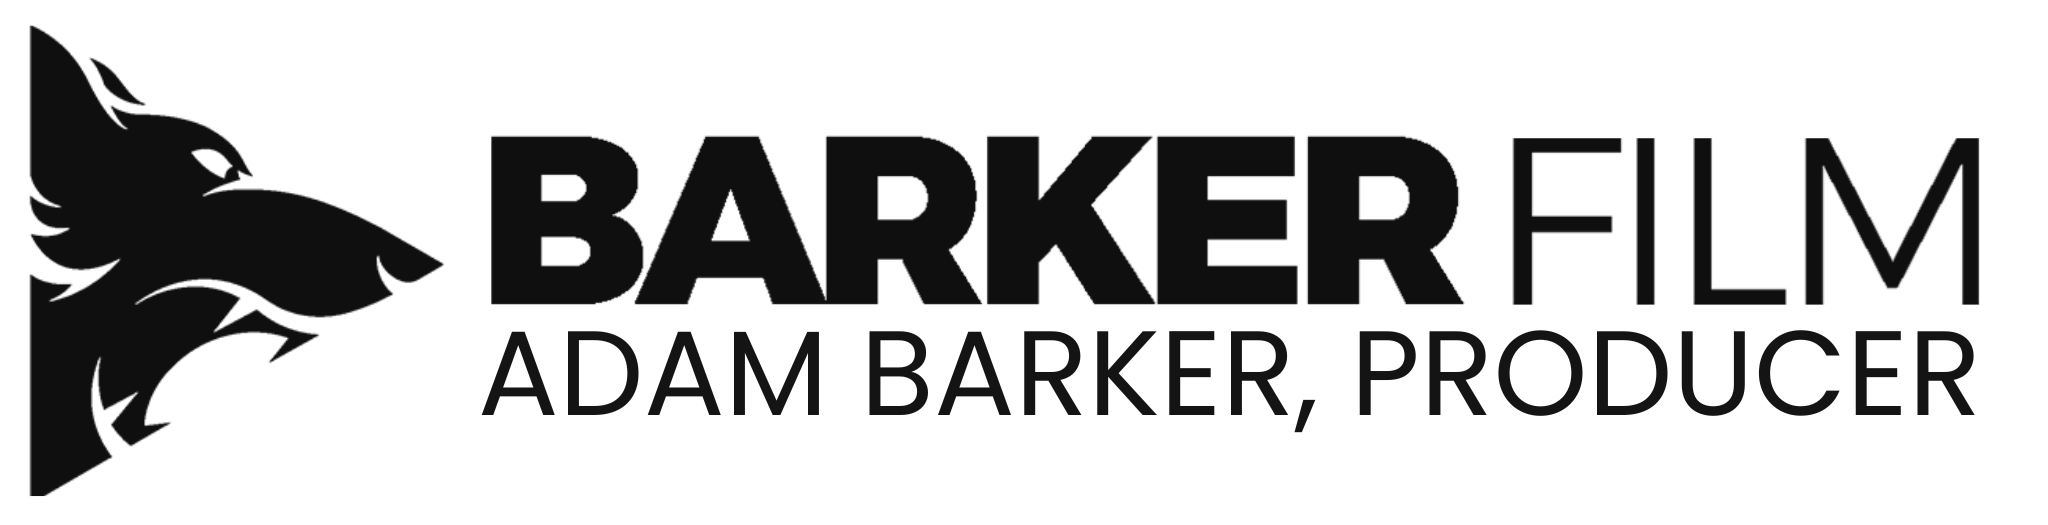 Barker Film